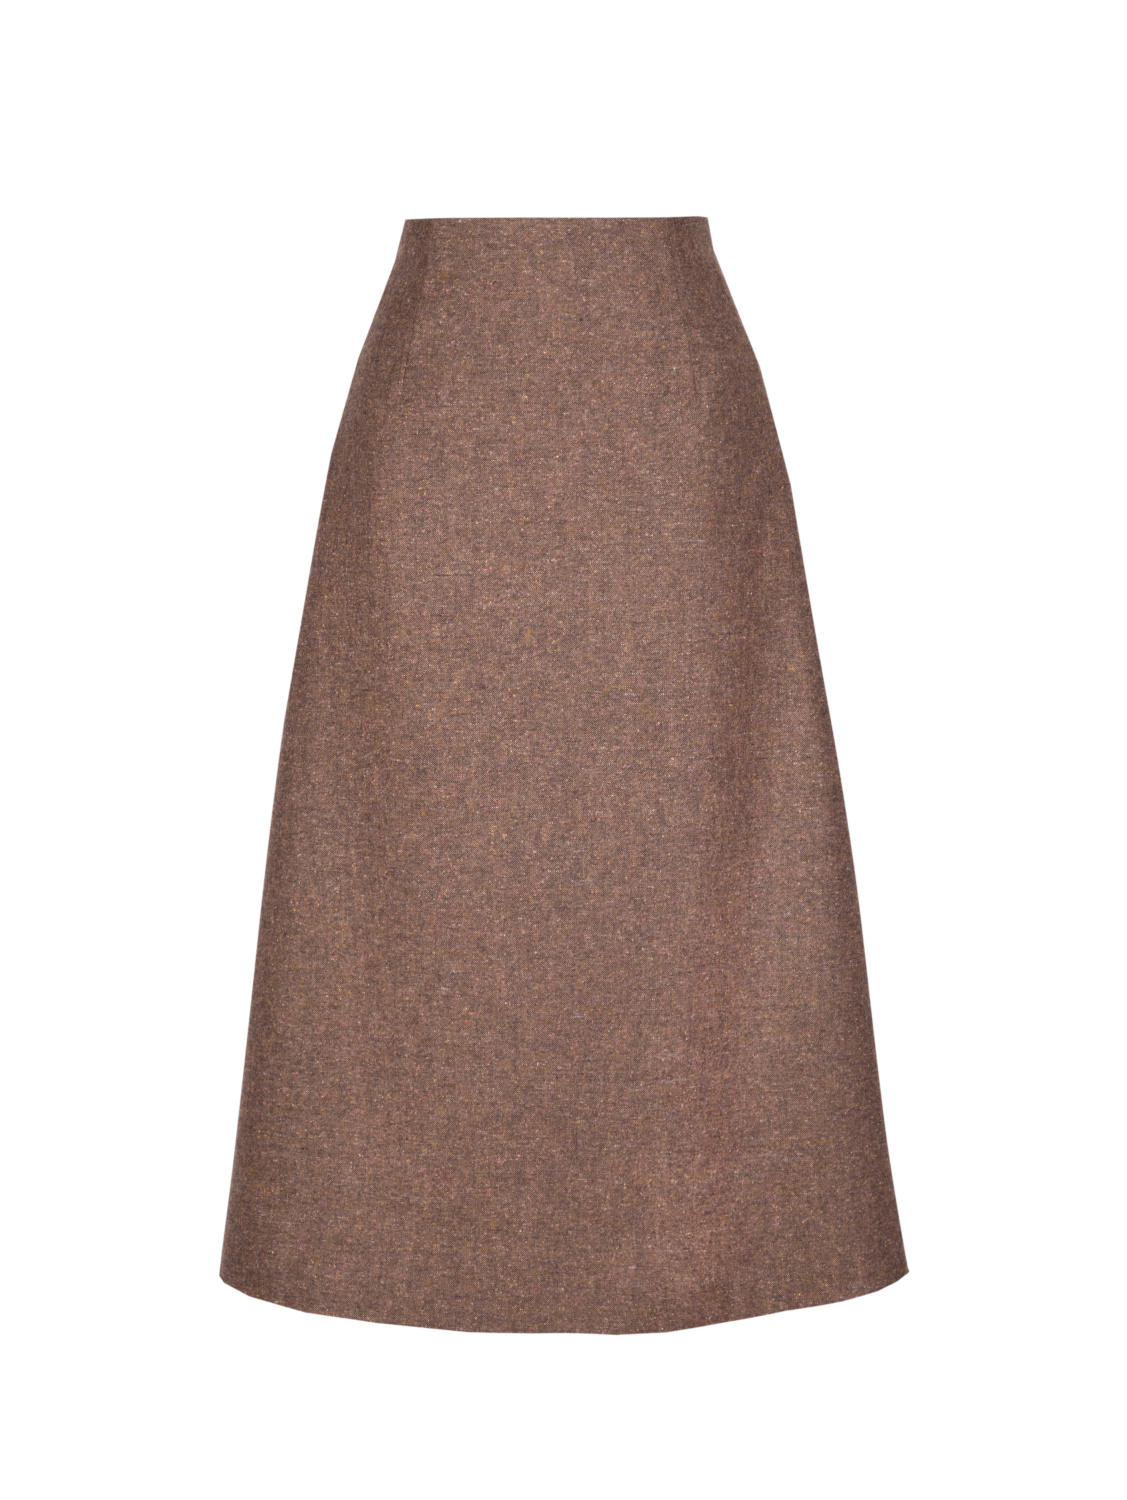 Твидовая юбка с завышенной талией коричневого цвета